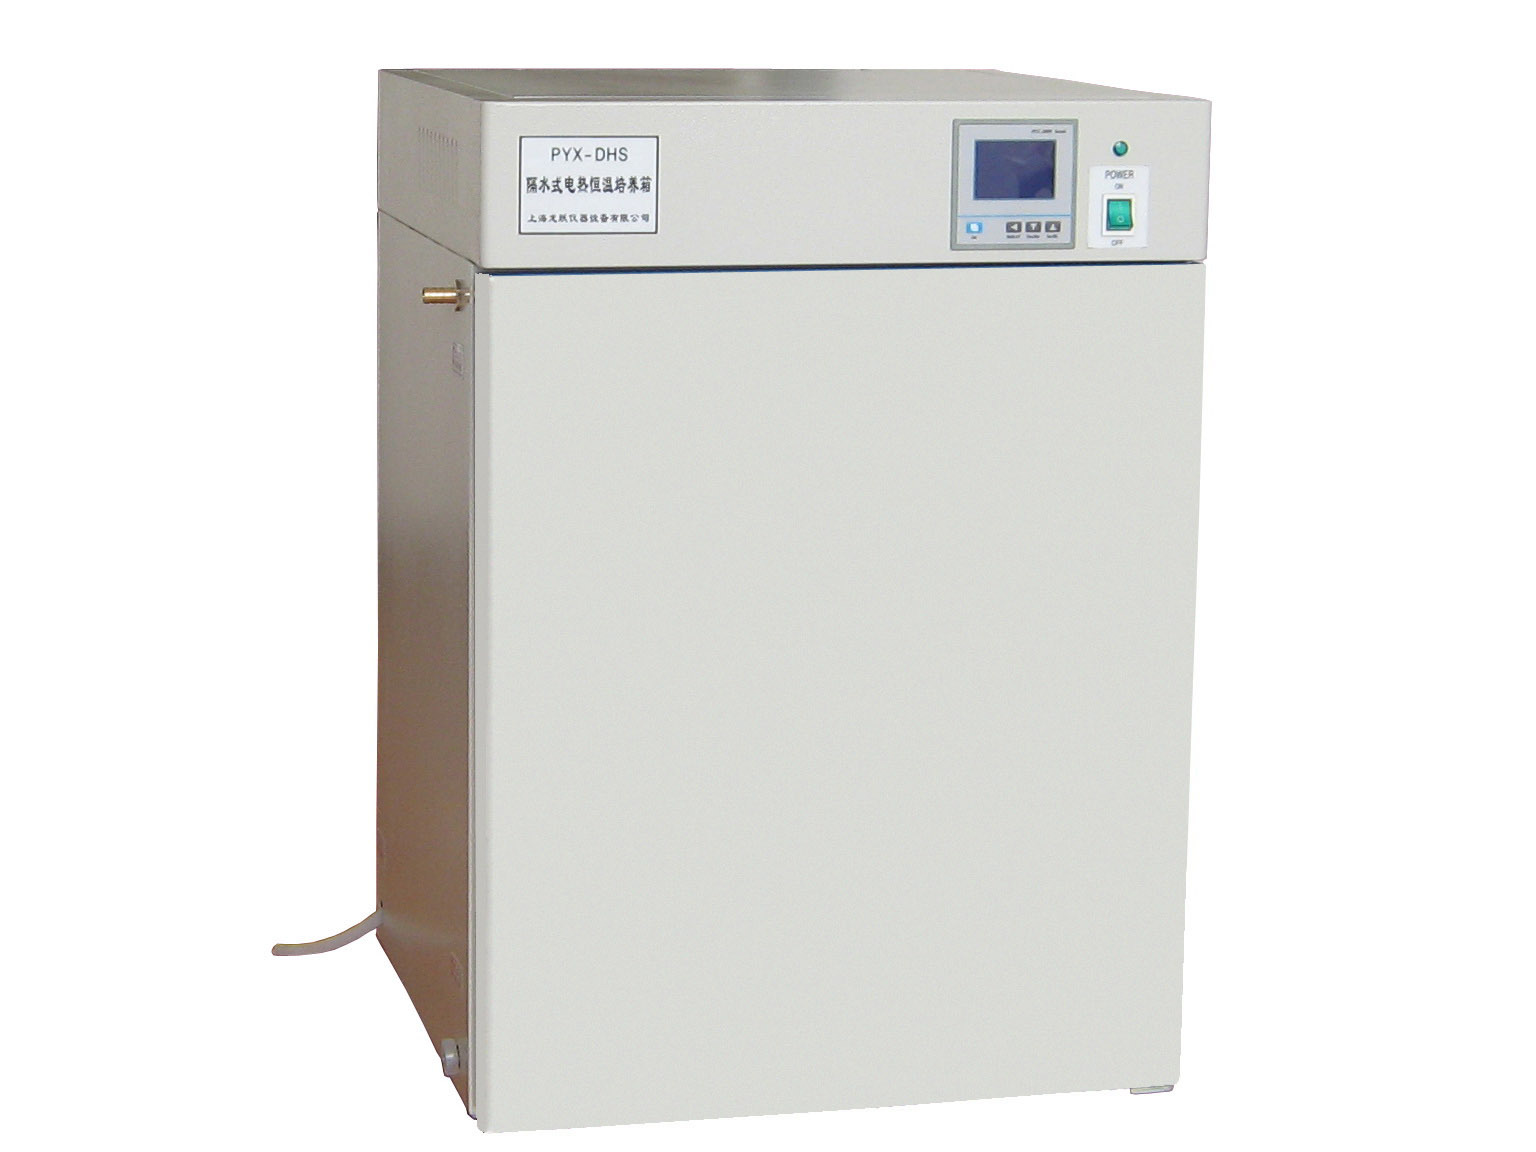  PYX-DHS系列隔水式电热恒温培养箱